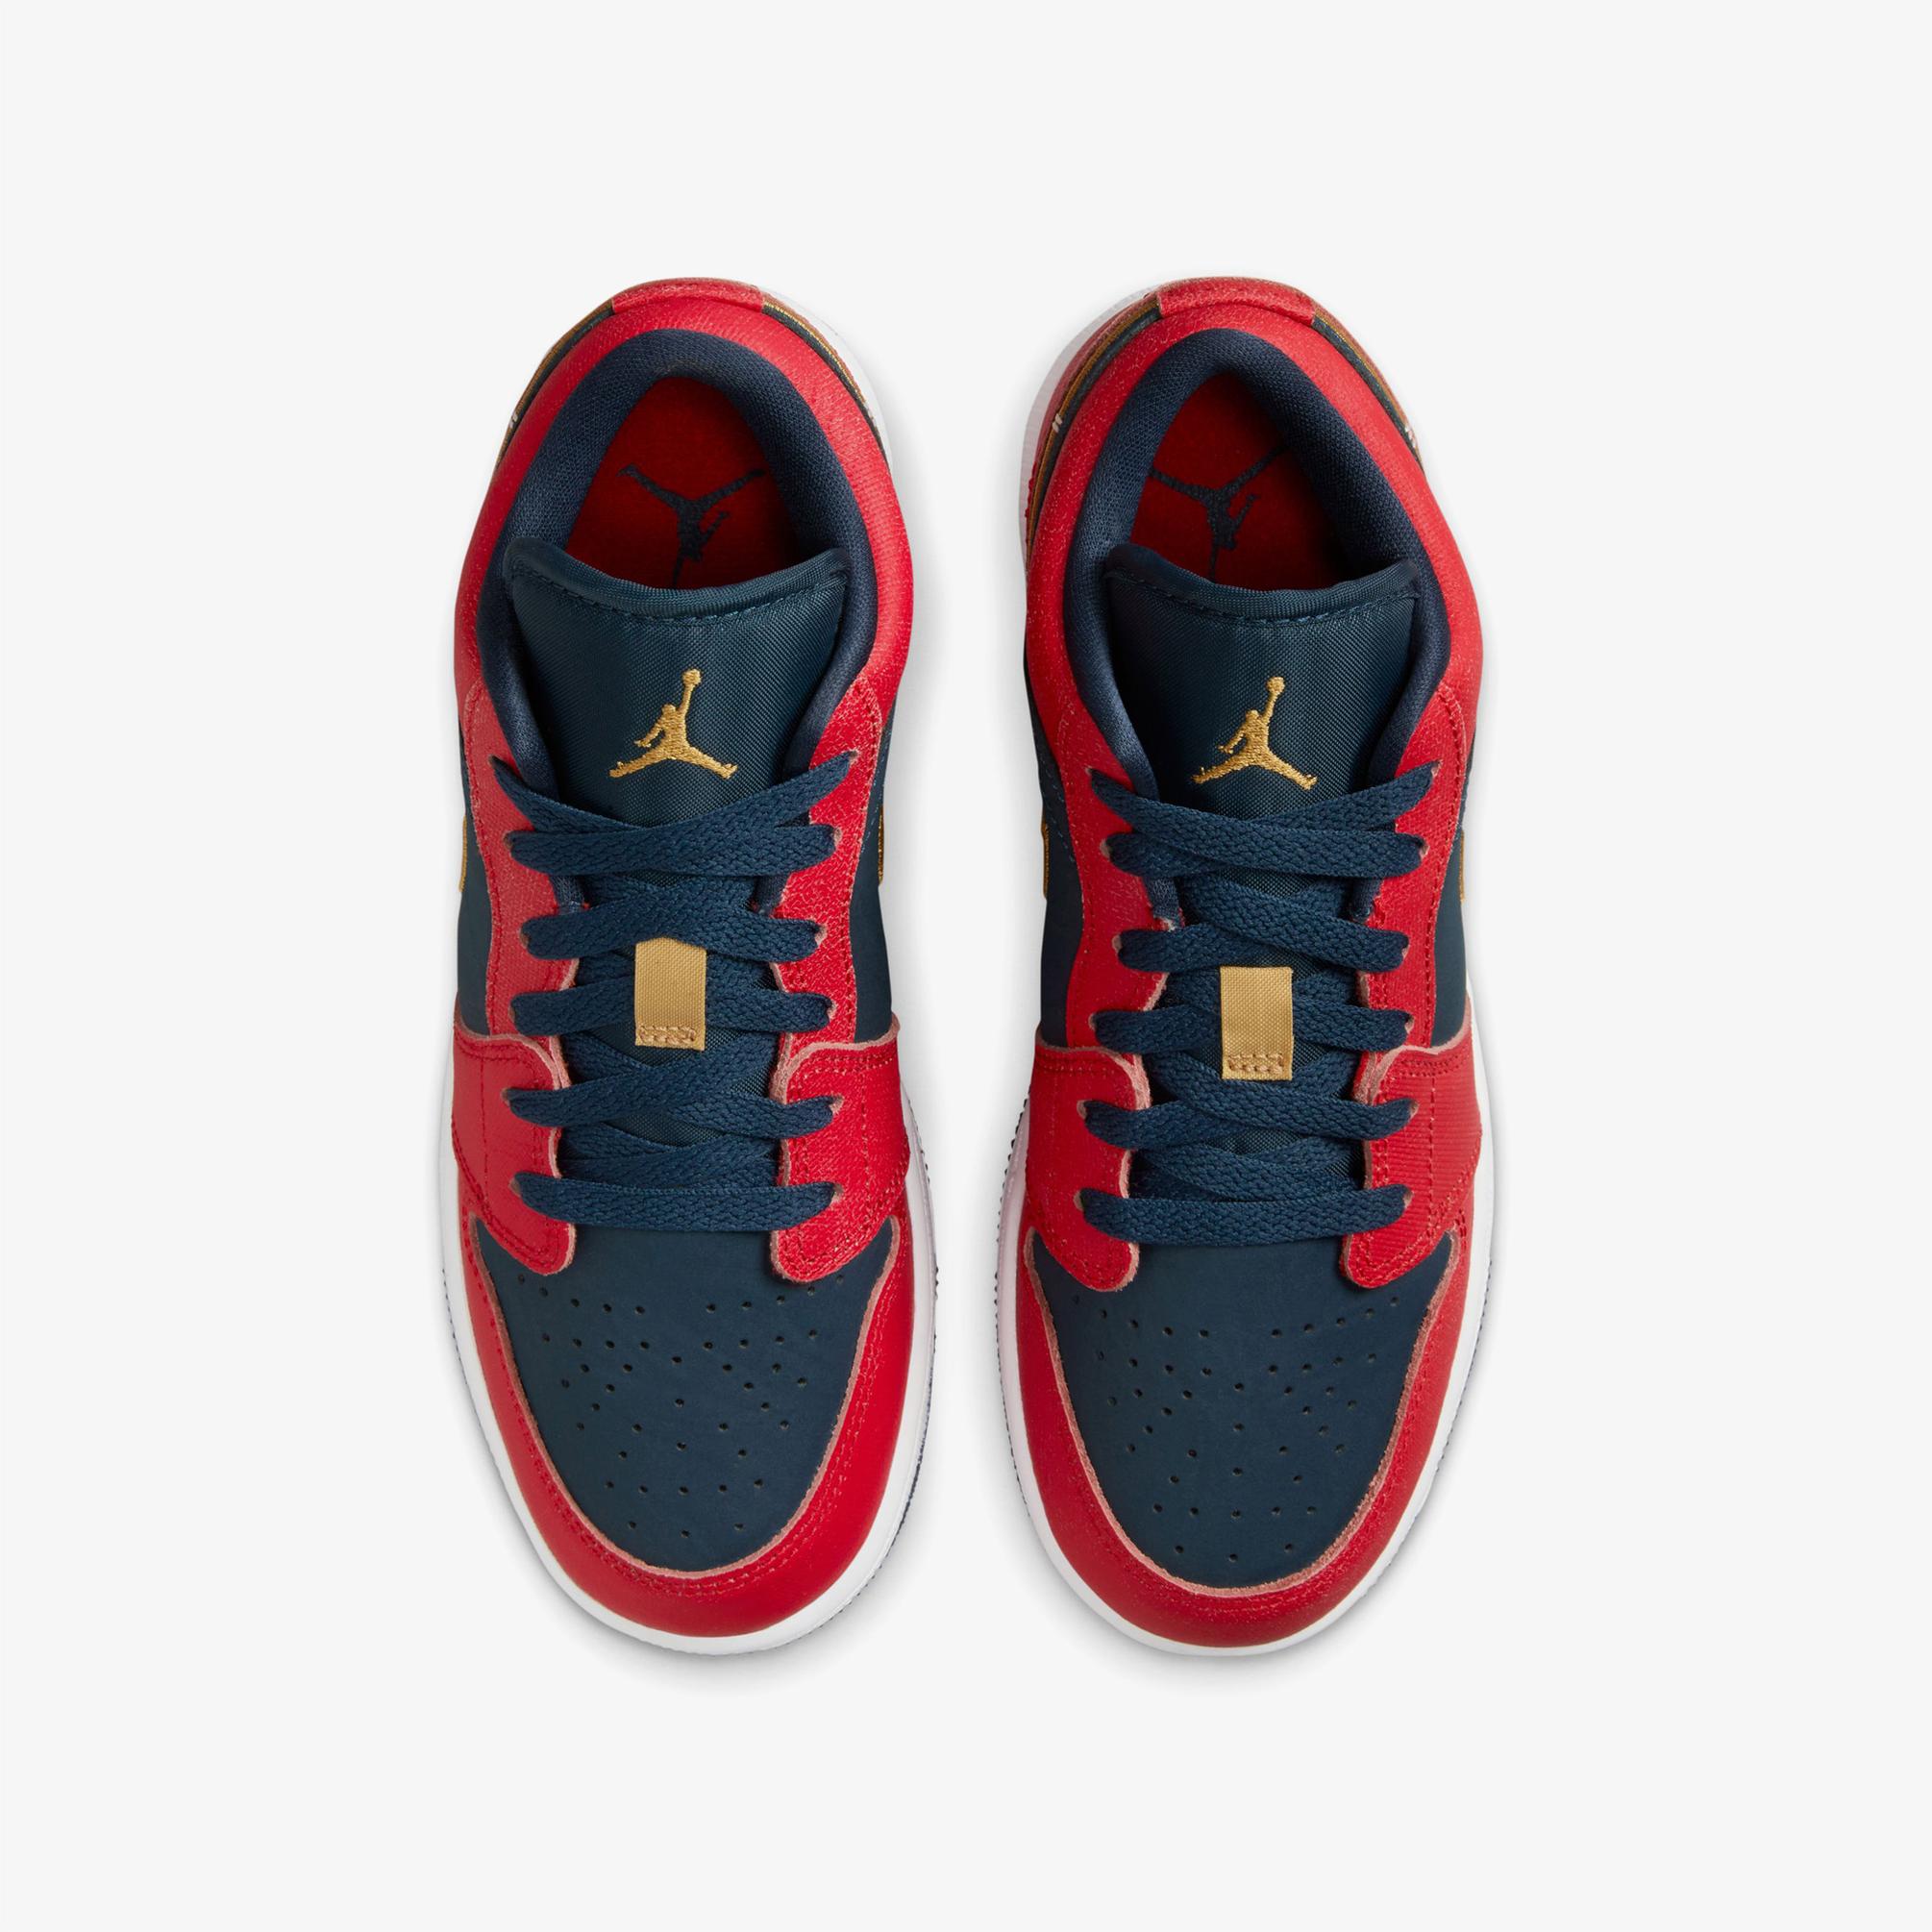  Jordan Air Jordan 1 Low Kadın Kırmızı Spor Ayakkabı